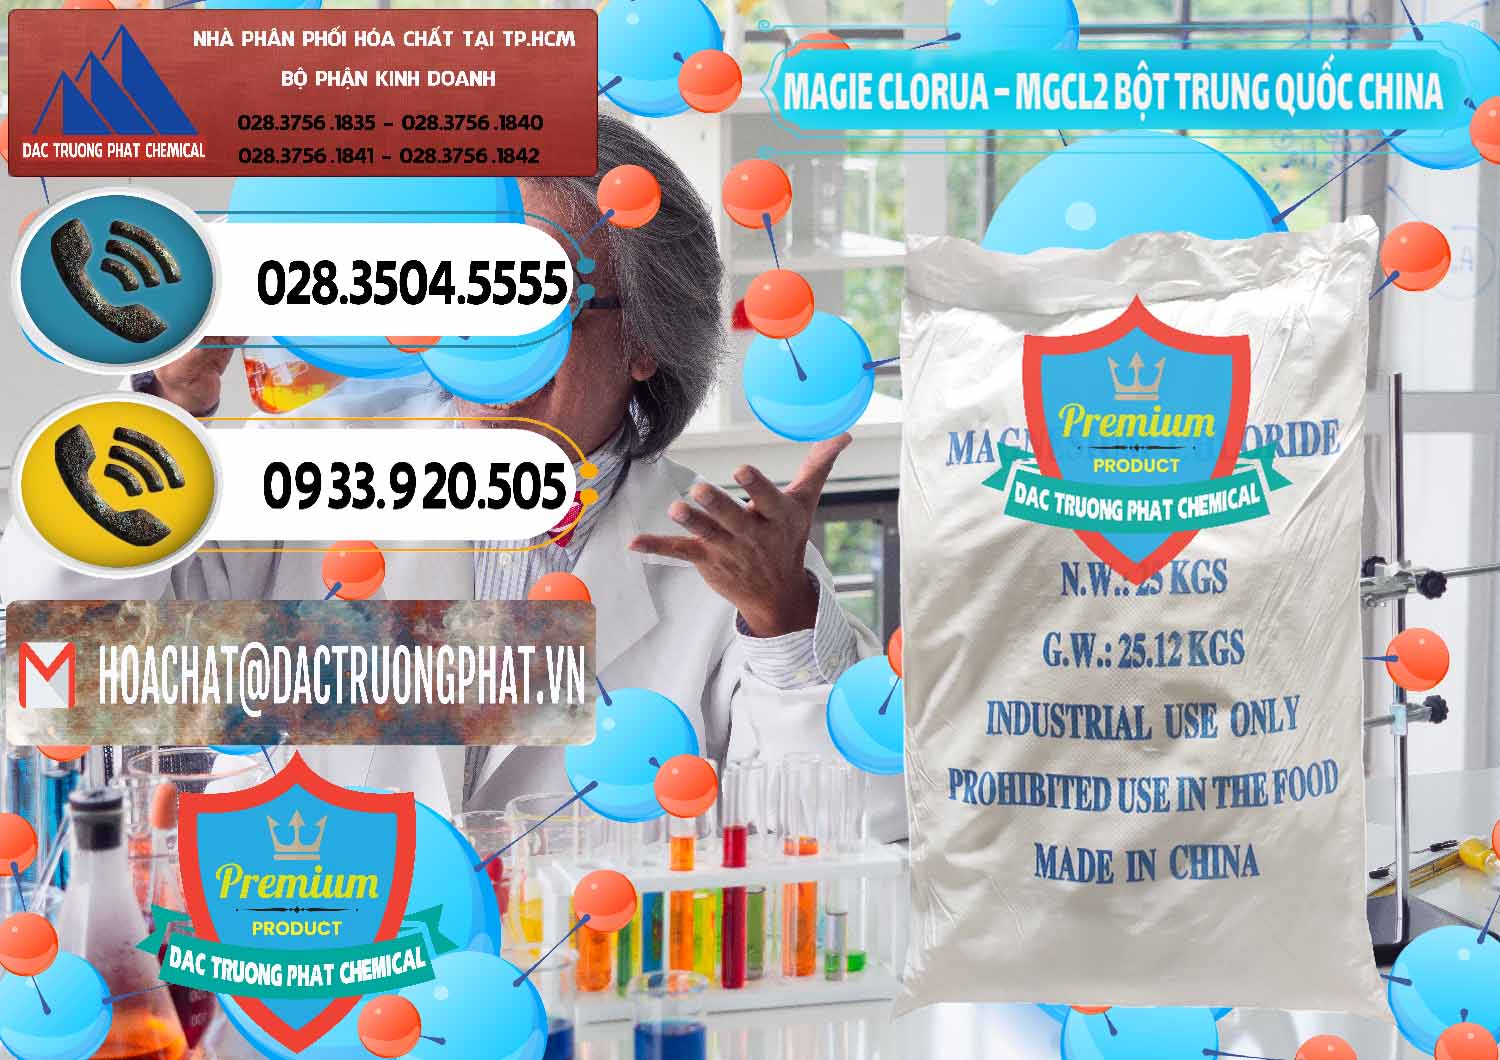 Nơi bán Magie Clorua – MGCL2 96% Dạng Bột Bao Chữ Xanh Trung Quốc China - 0207 - Cty cung cấp - phân phối hóa chất tại TP.HCM - hoachatdetnhuom.vn